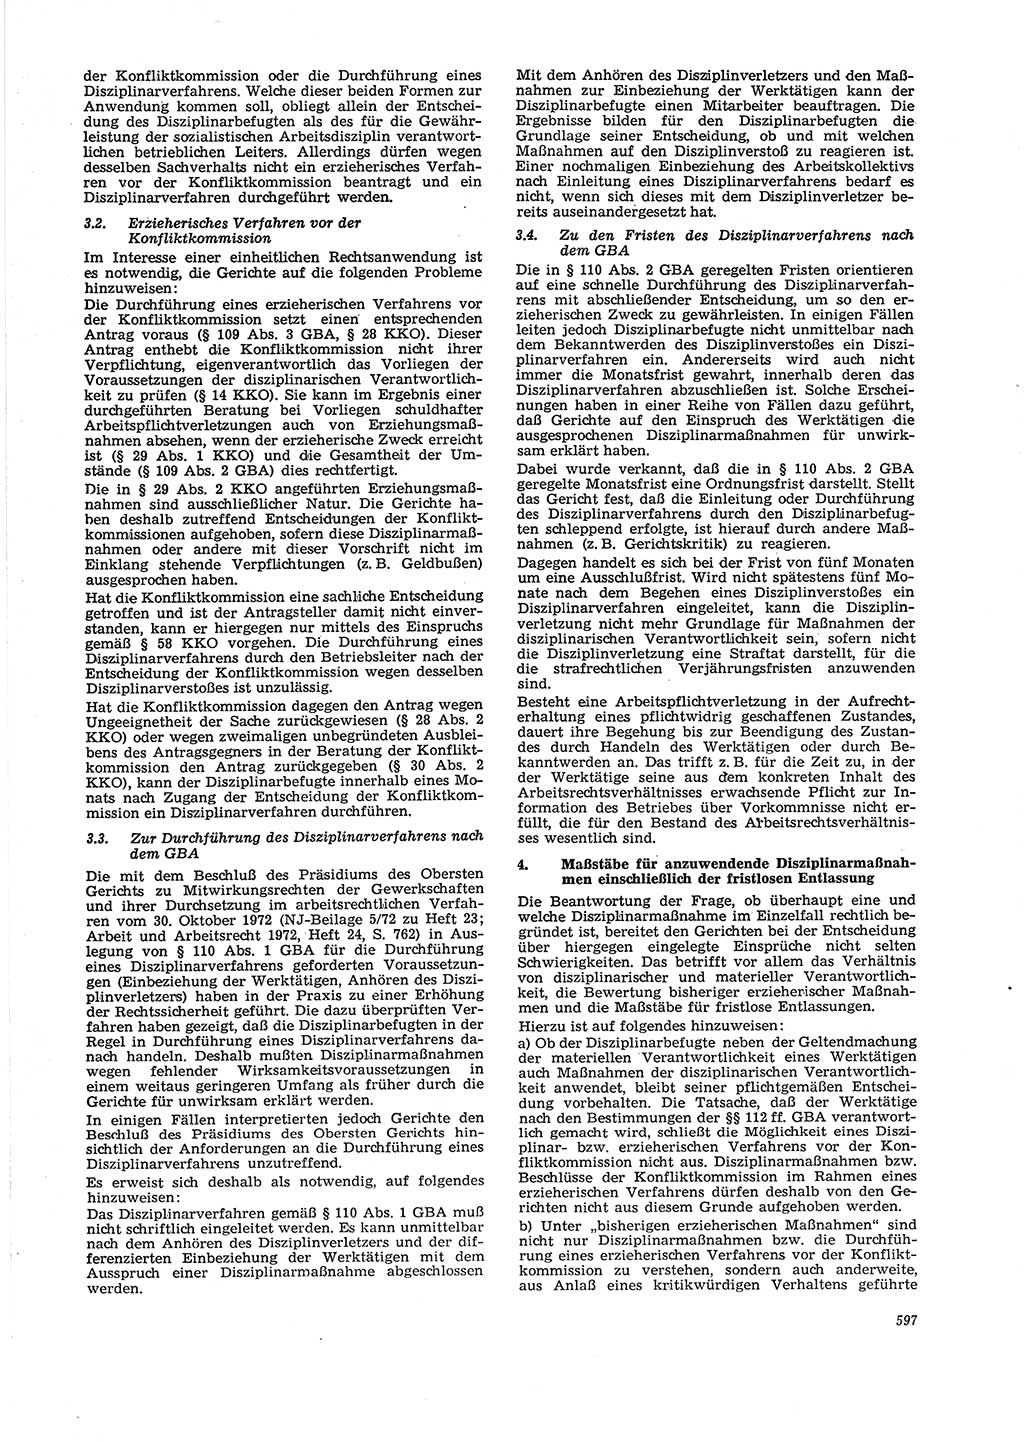 Neue Justiz (NJ), Zeitschrift für Recht und Rechtswissenschaft [Deutsche Demokratische Republik (DDR)], 29. Jahrgang 1975, Seite 597 (NJ DDR 1975, S. 597)